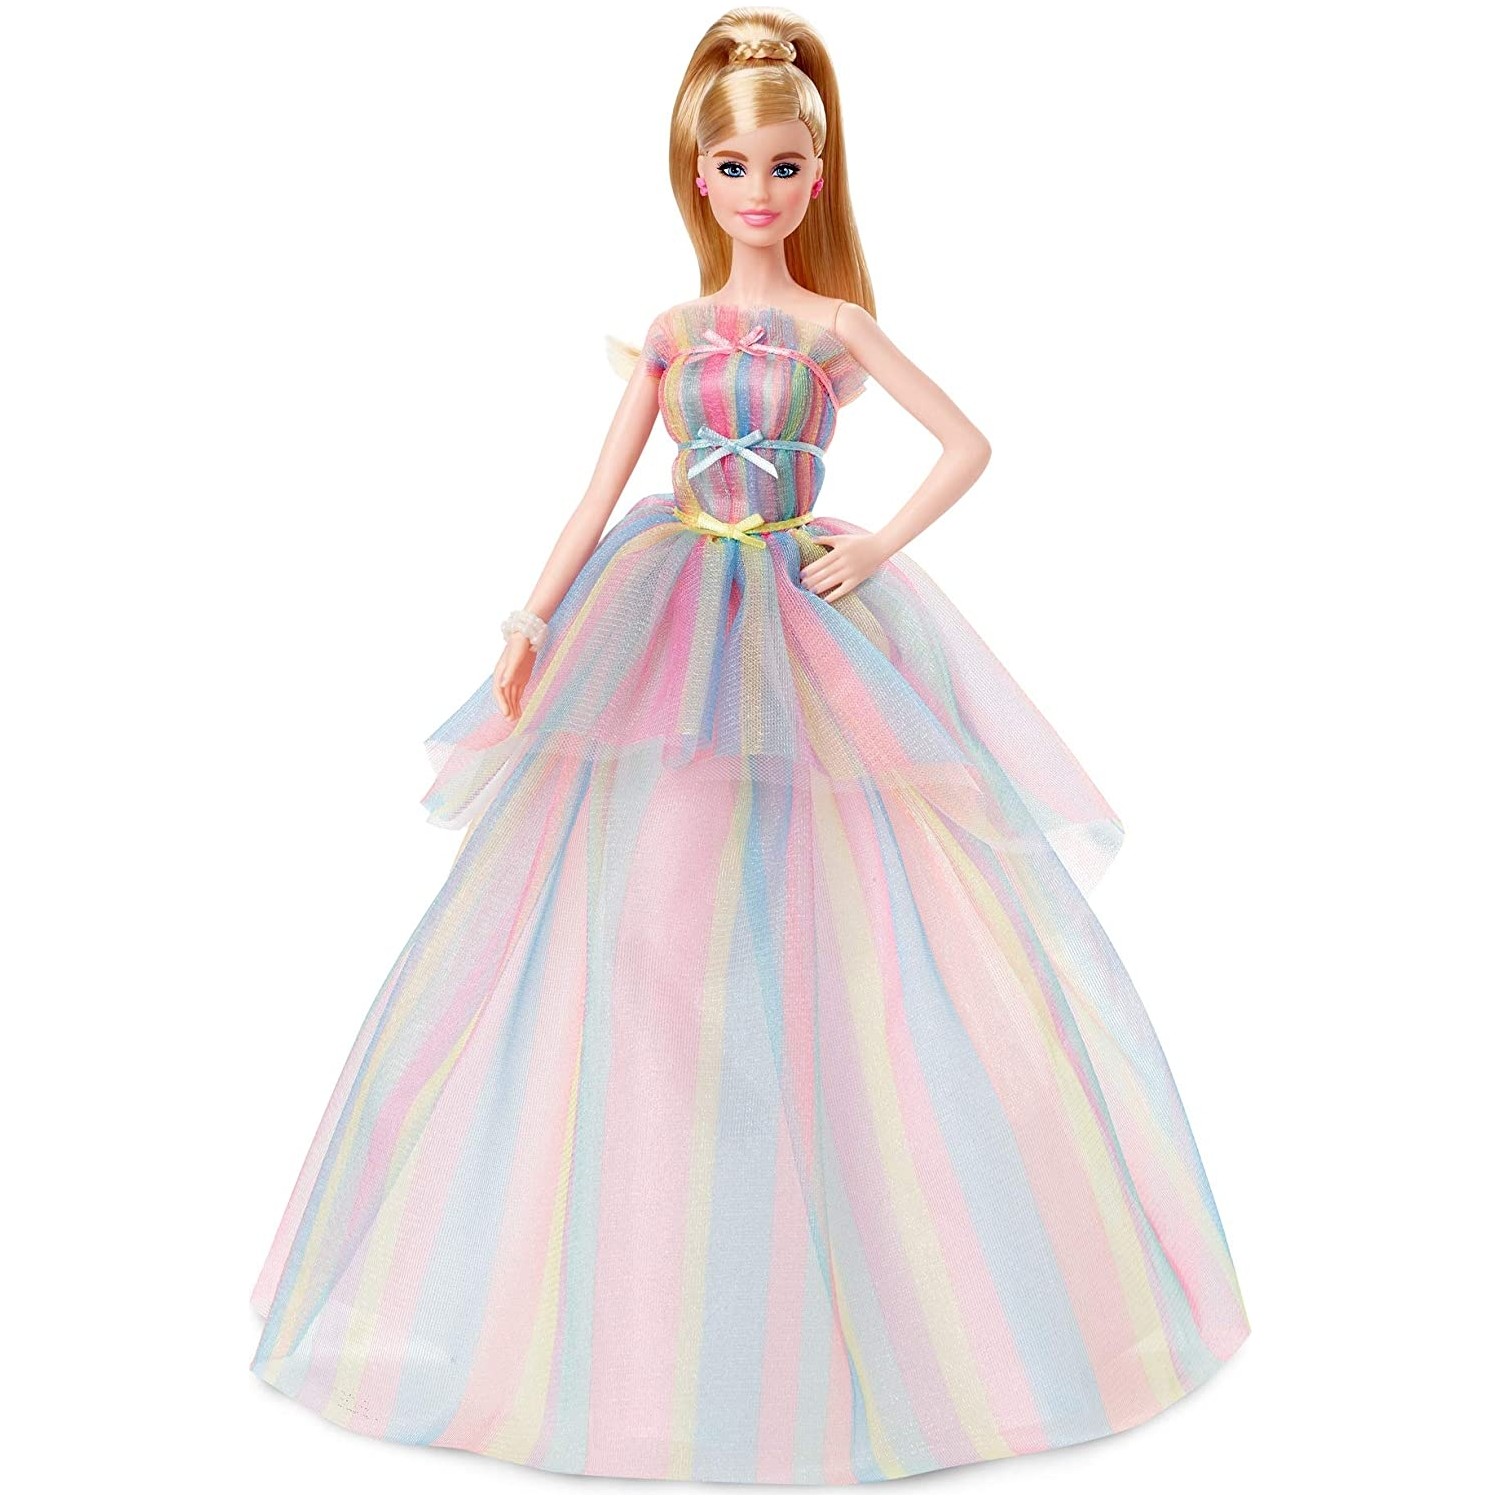 Кукла Barbie Birthday Princess GHT42 кукла barbie princess adventure gml68 в ассортименте